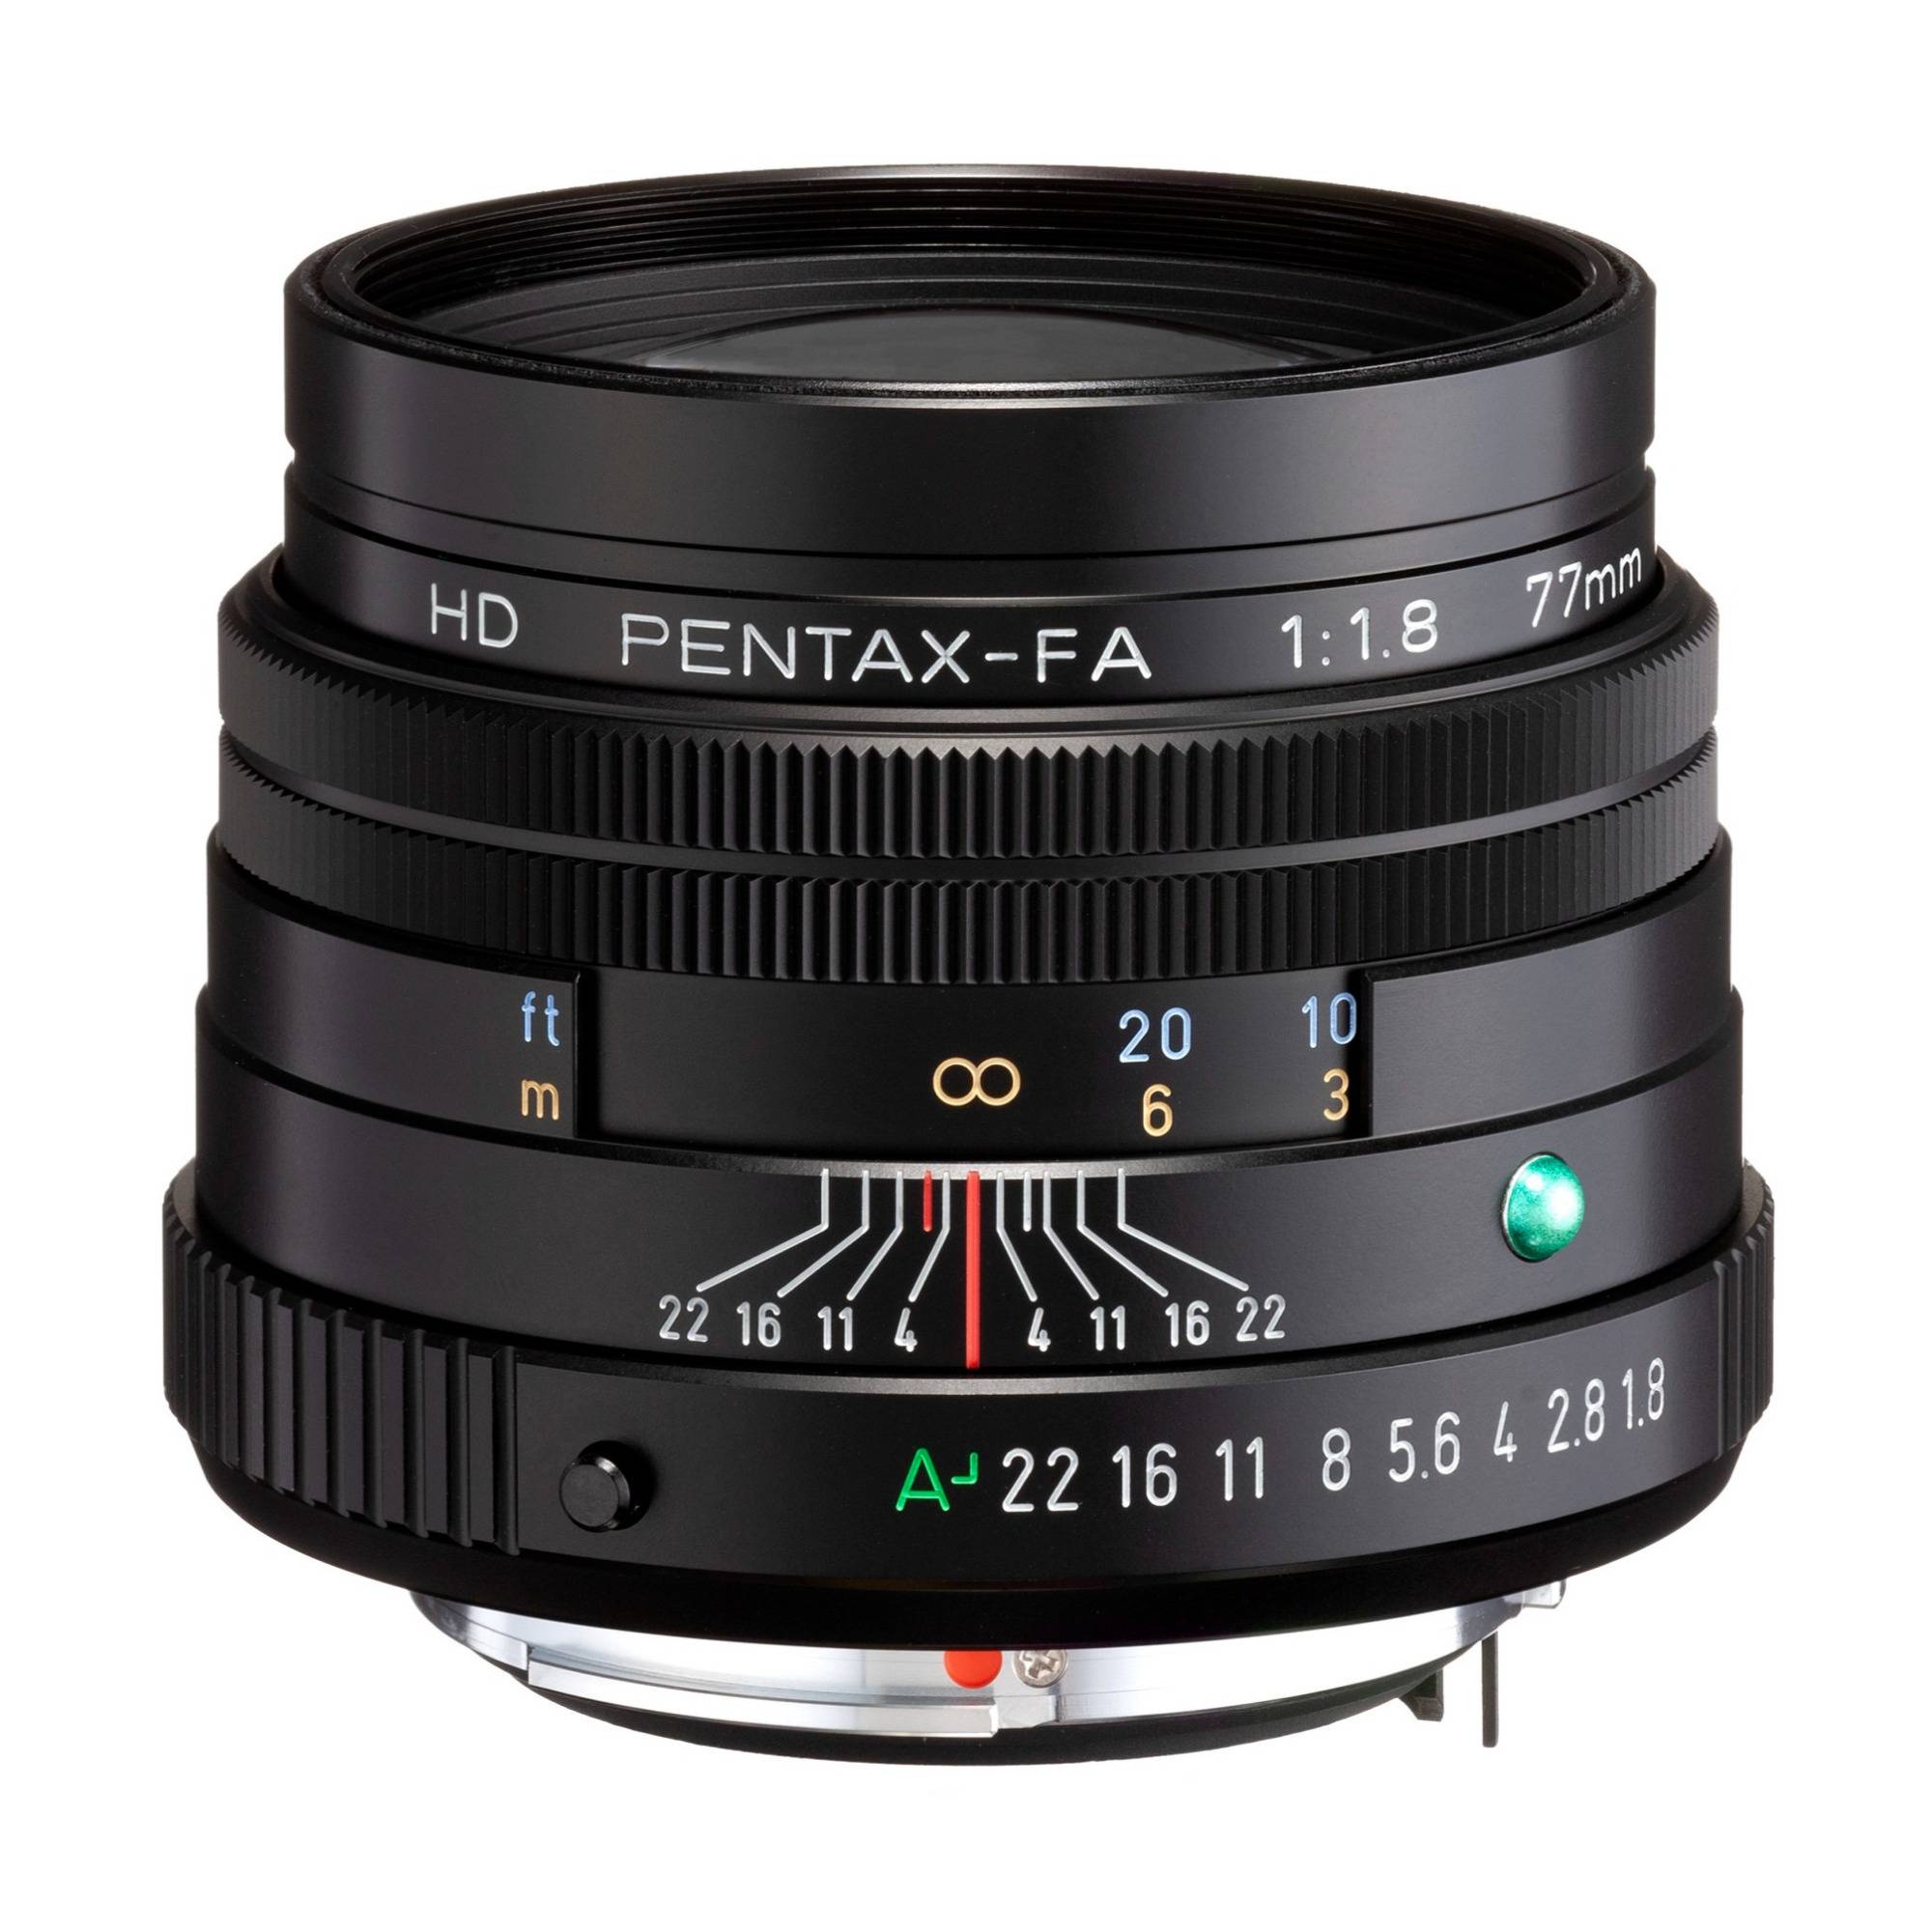 HD Pentax-FA 77mm f/1.8 Limited Lens (Black)